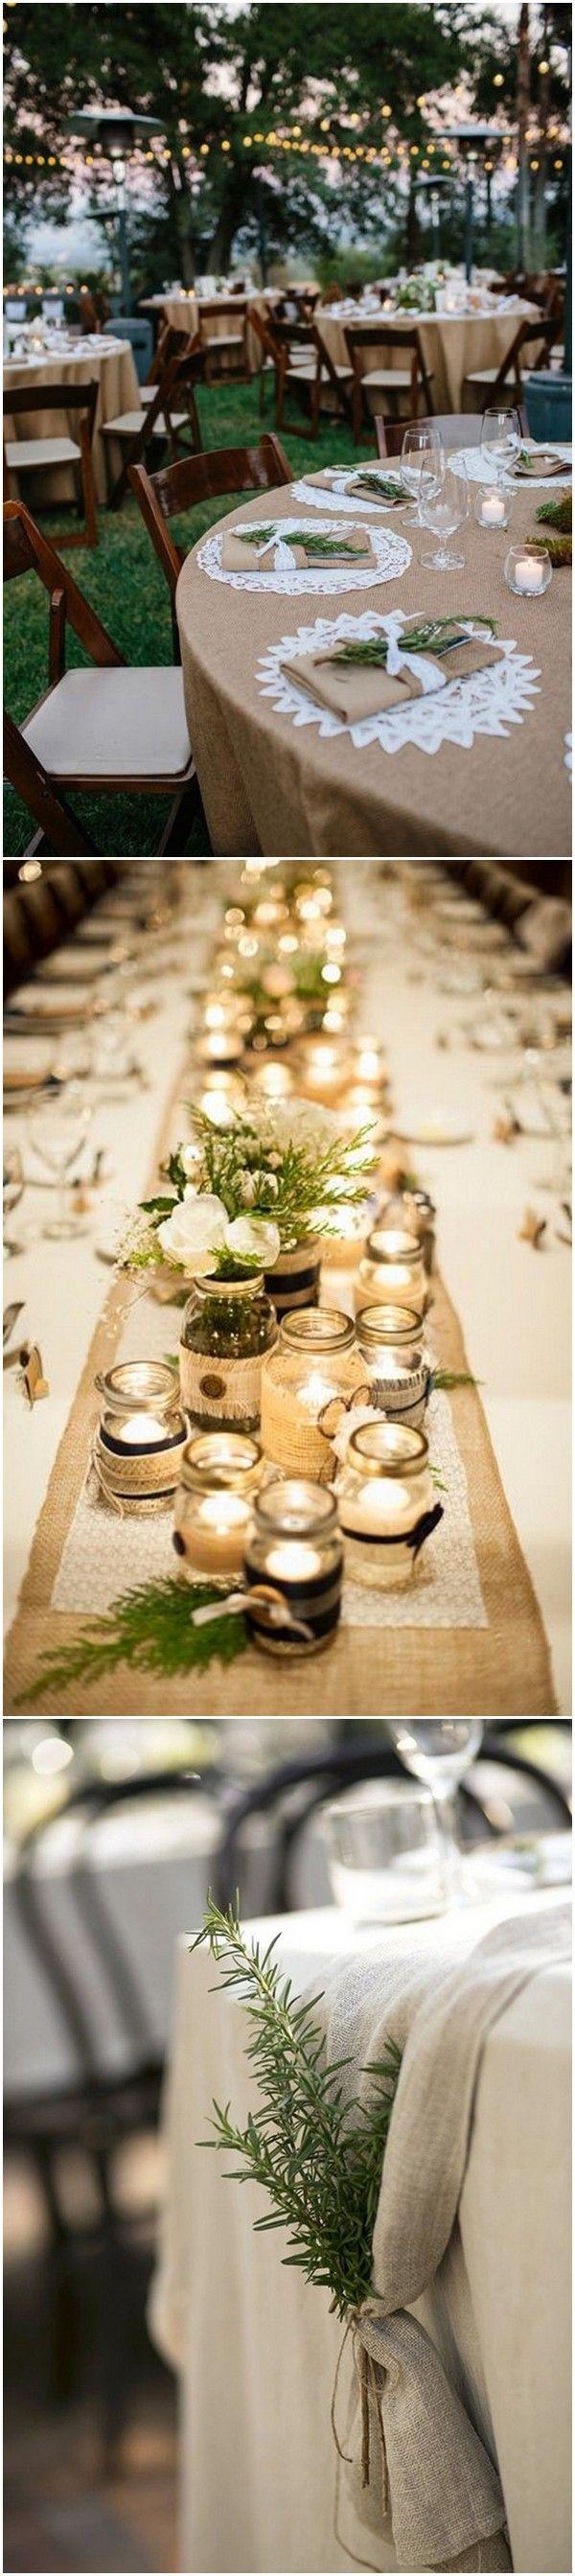 زفاف - 20 Brilliant Wedding Table Decoration Ideas - Page 2 Of 2